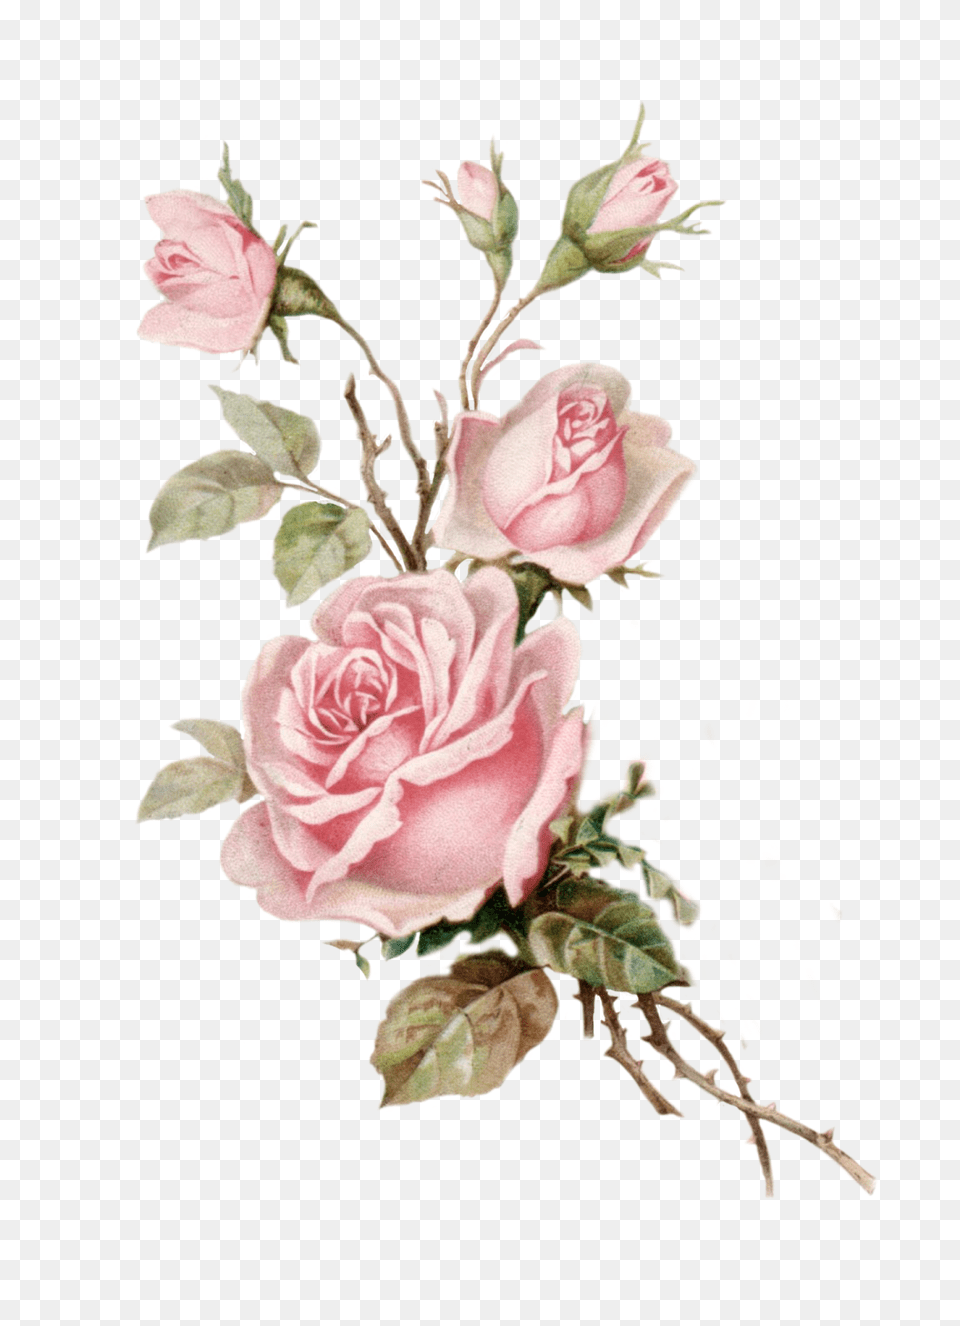 Vintage Pink Rose Cut Out Pink Vintage Rose, Plant, Flower, Pattern, Graphics Free Png Download